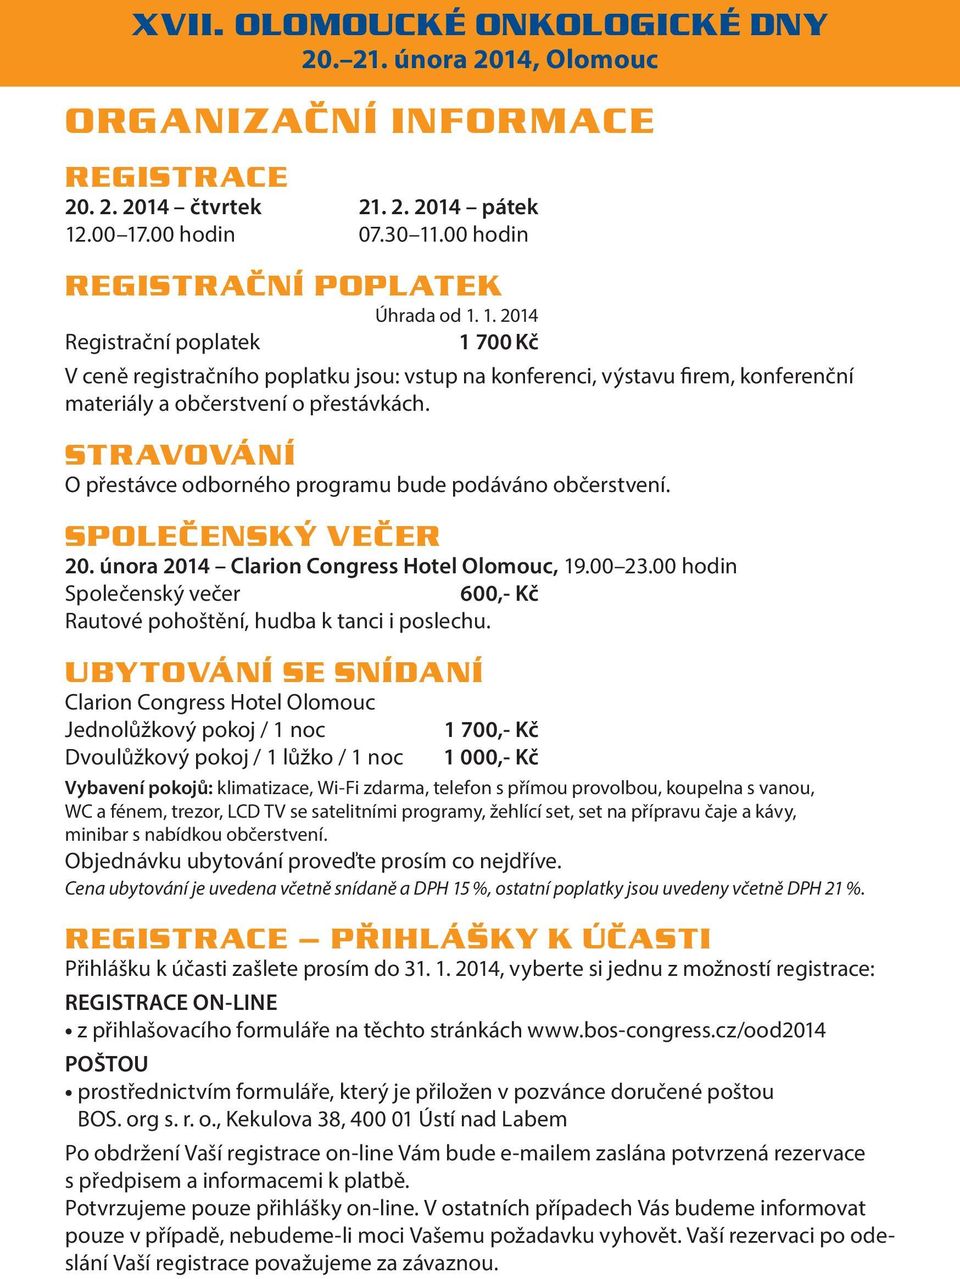 STRAVOVÁNÍ O přestávce odborného programu bude podáváno občerstvení. SPOLEČENSKÝ VEČER 20. února 2014 Clarion Congress Hotel Olomouc, 19.00 23.